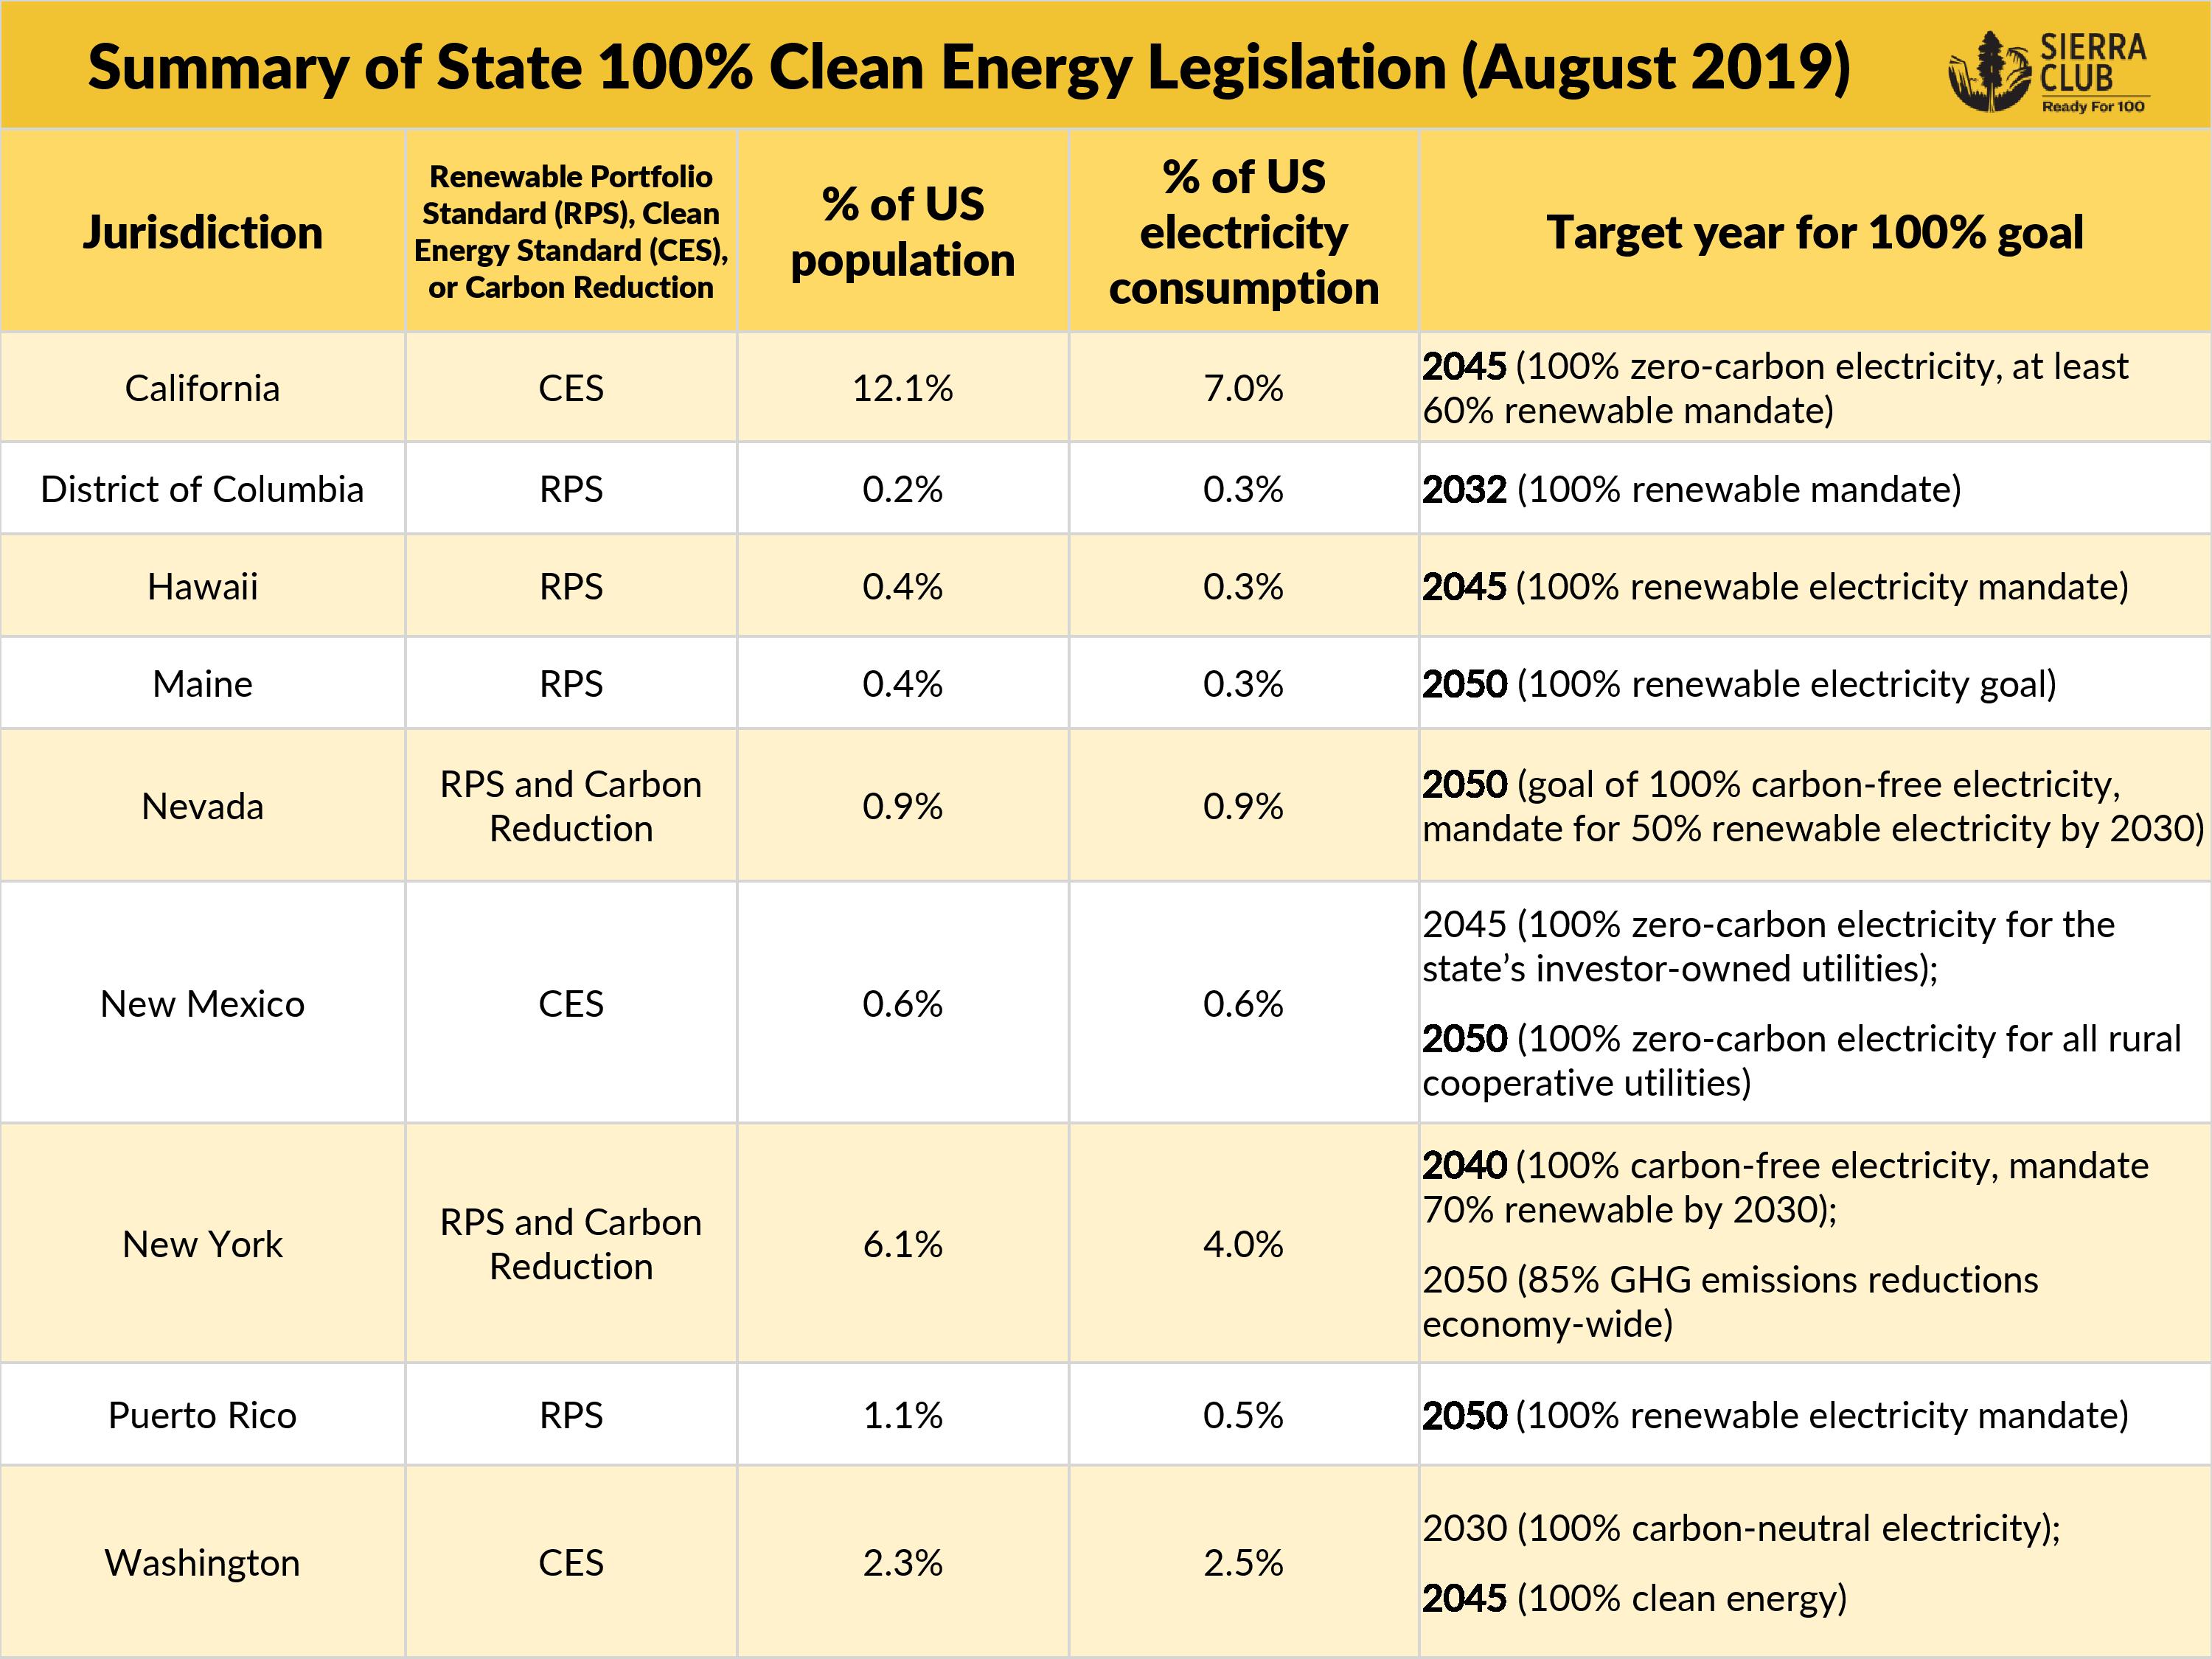 Table summarizing state 100% clean energy legislation